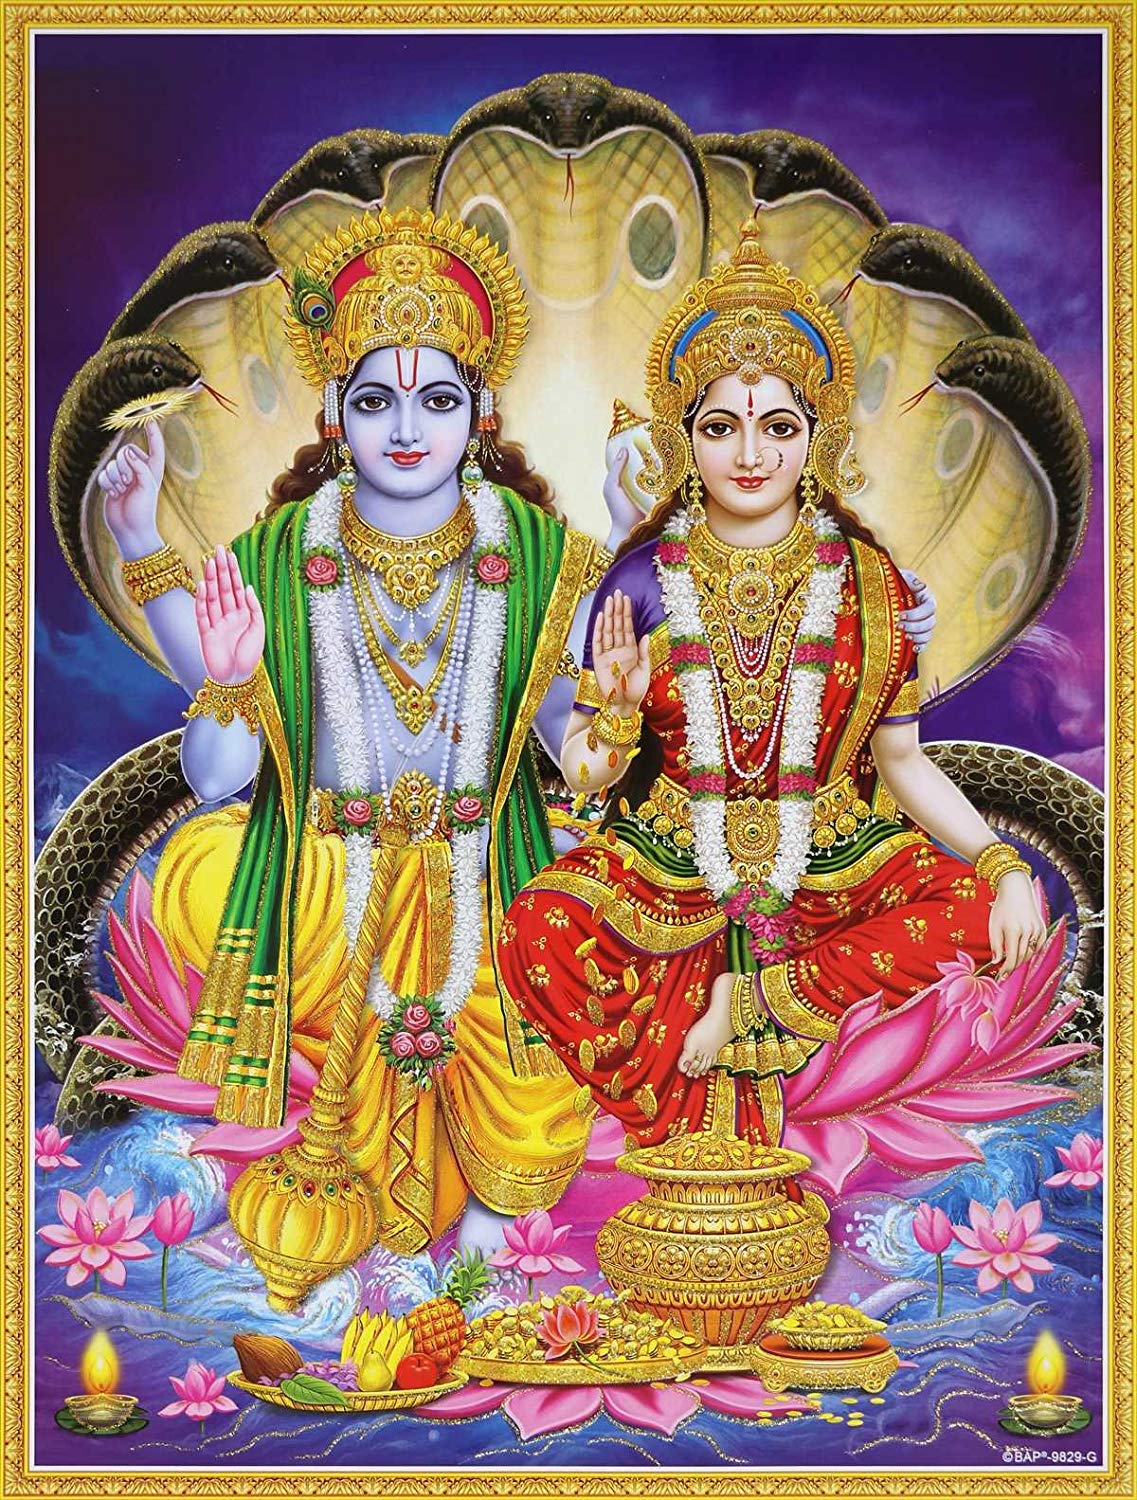 Lord Vishnu And Lakshmi - 1137x1500 Wallpaper 